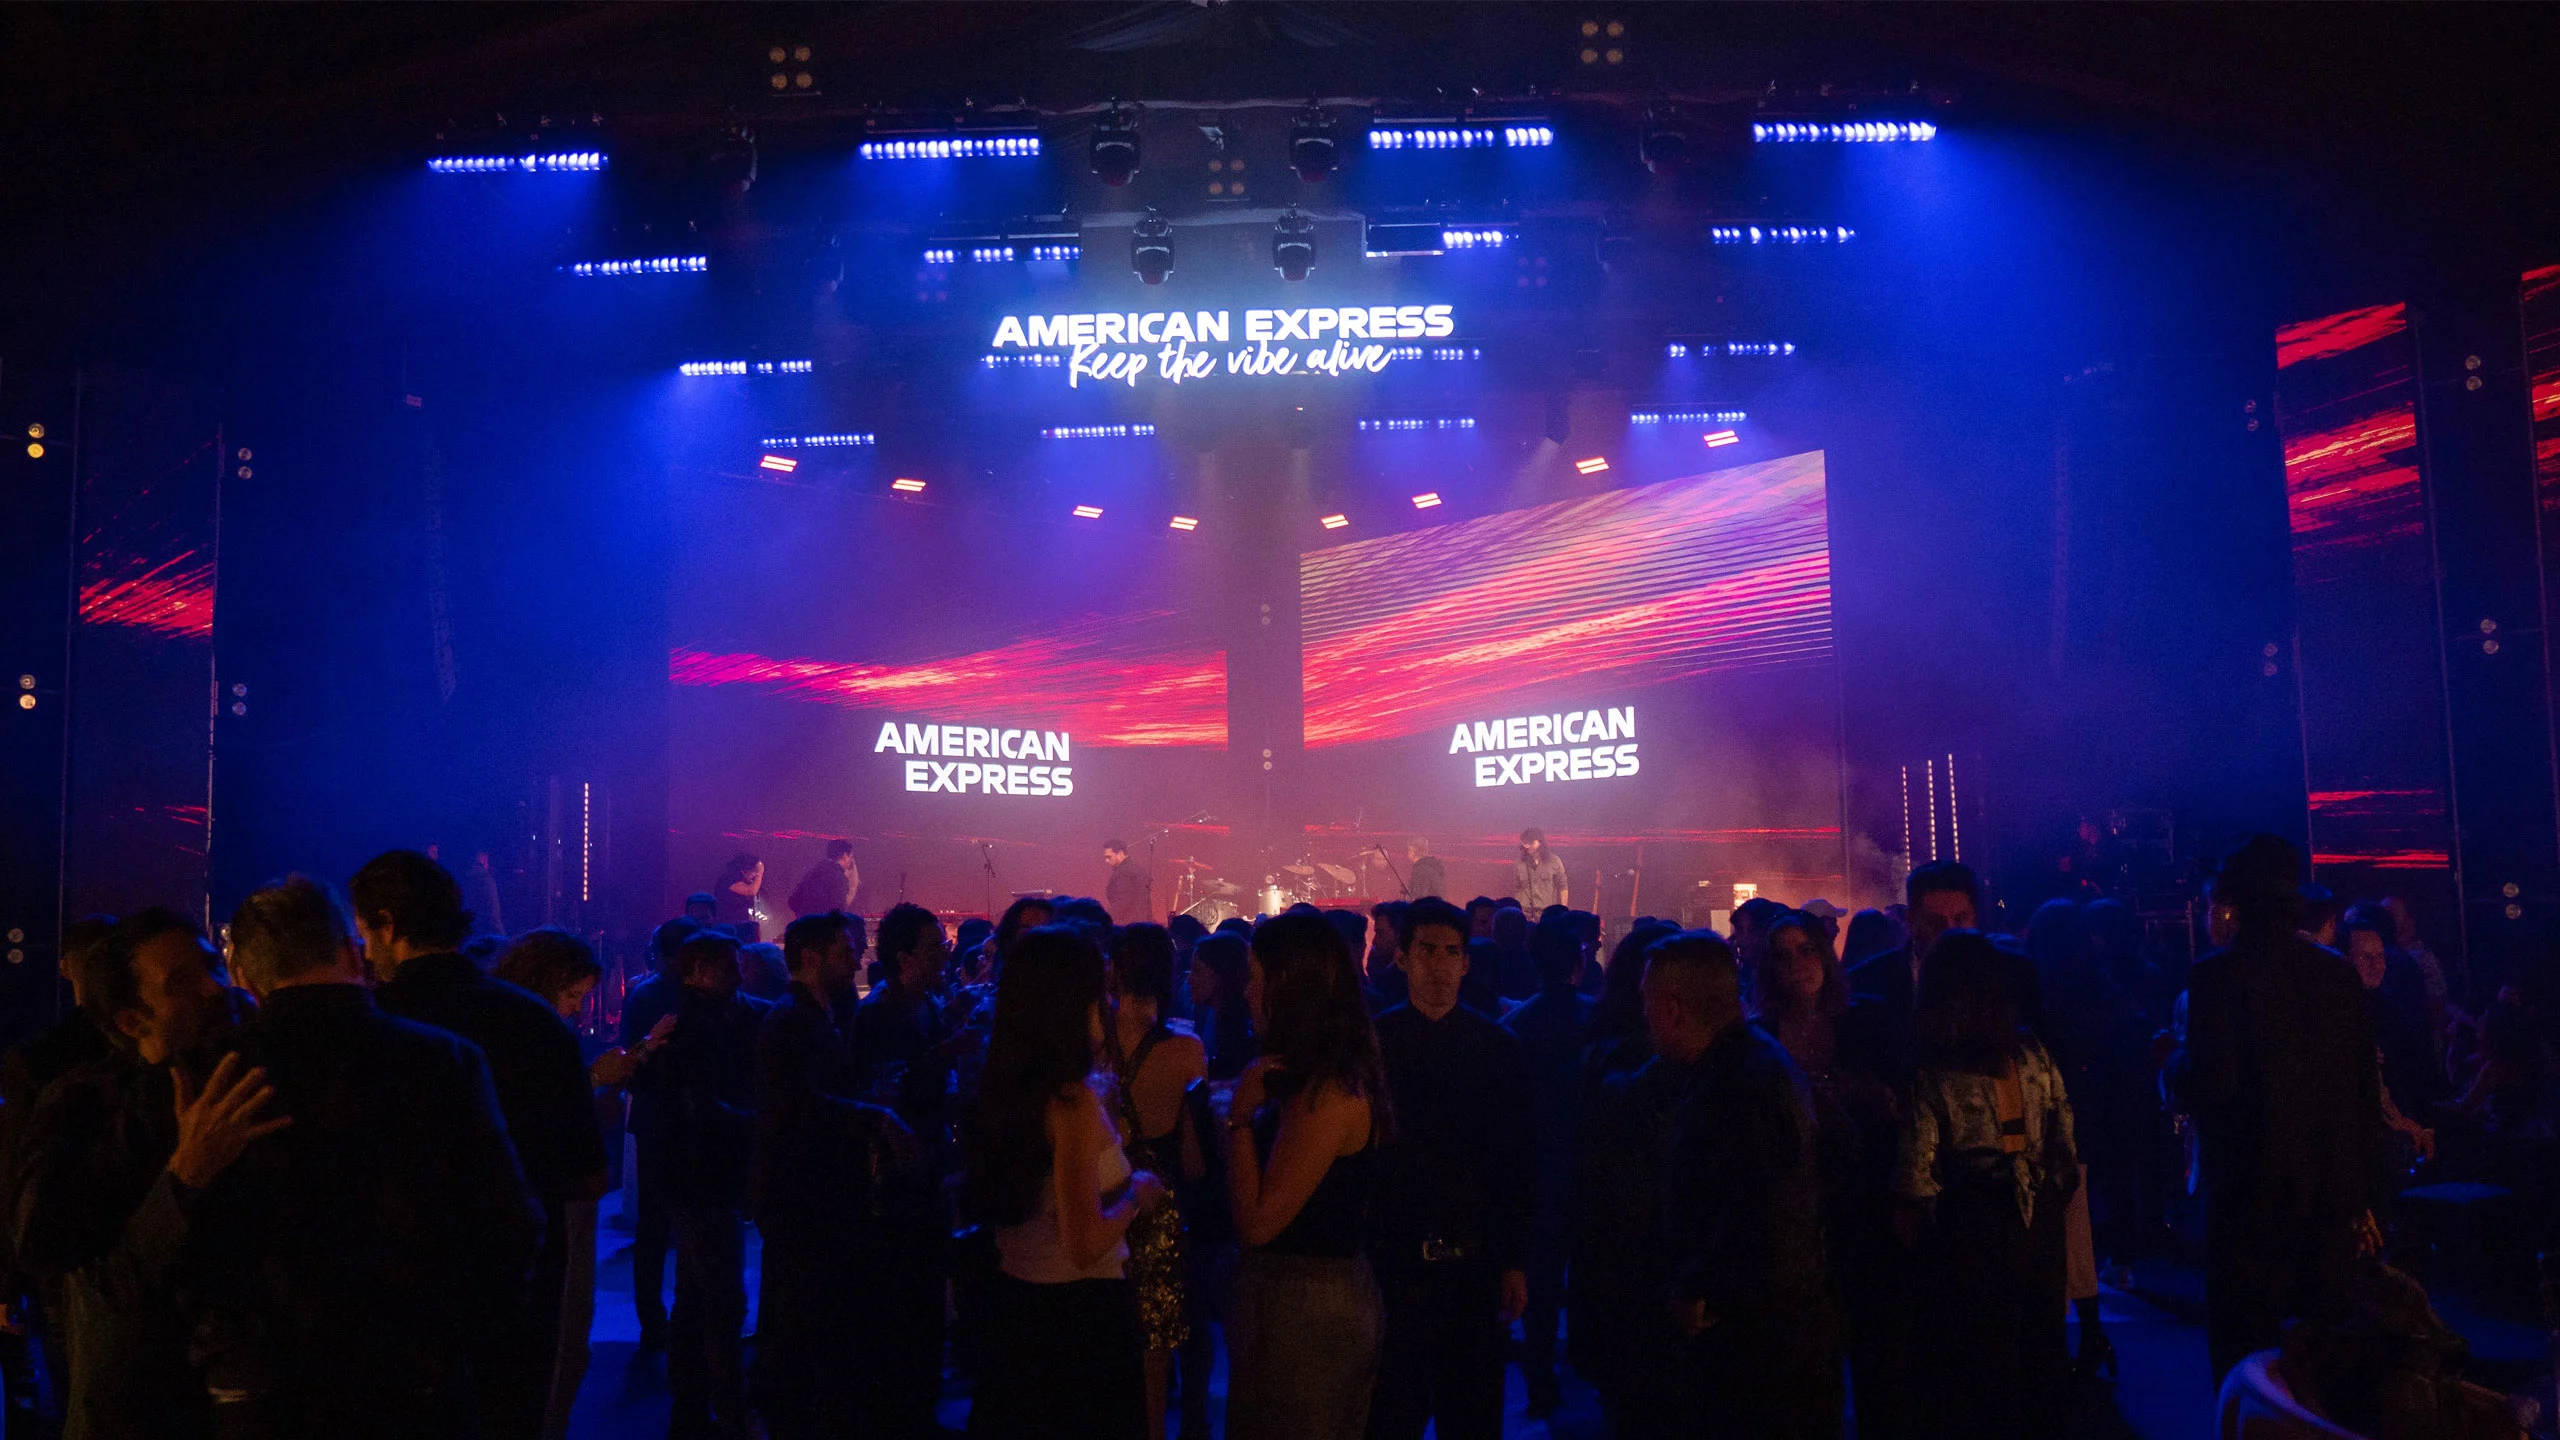 La noche más esperada del año: experiencias compartidas e inolvidables con Amex